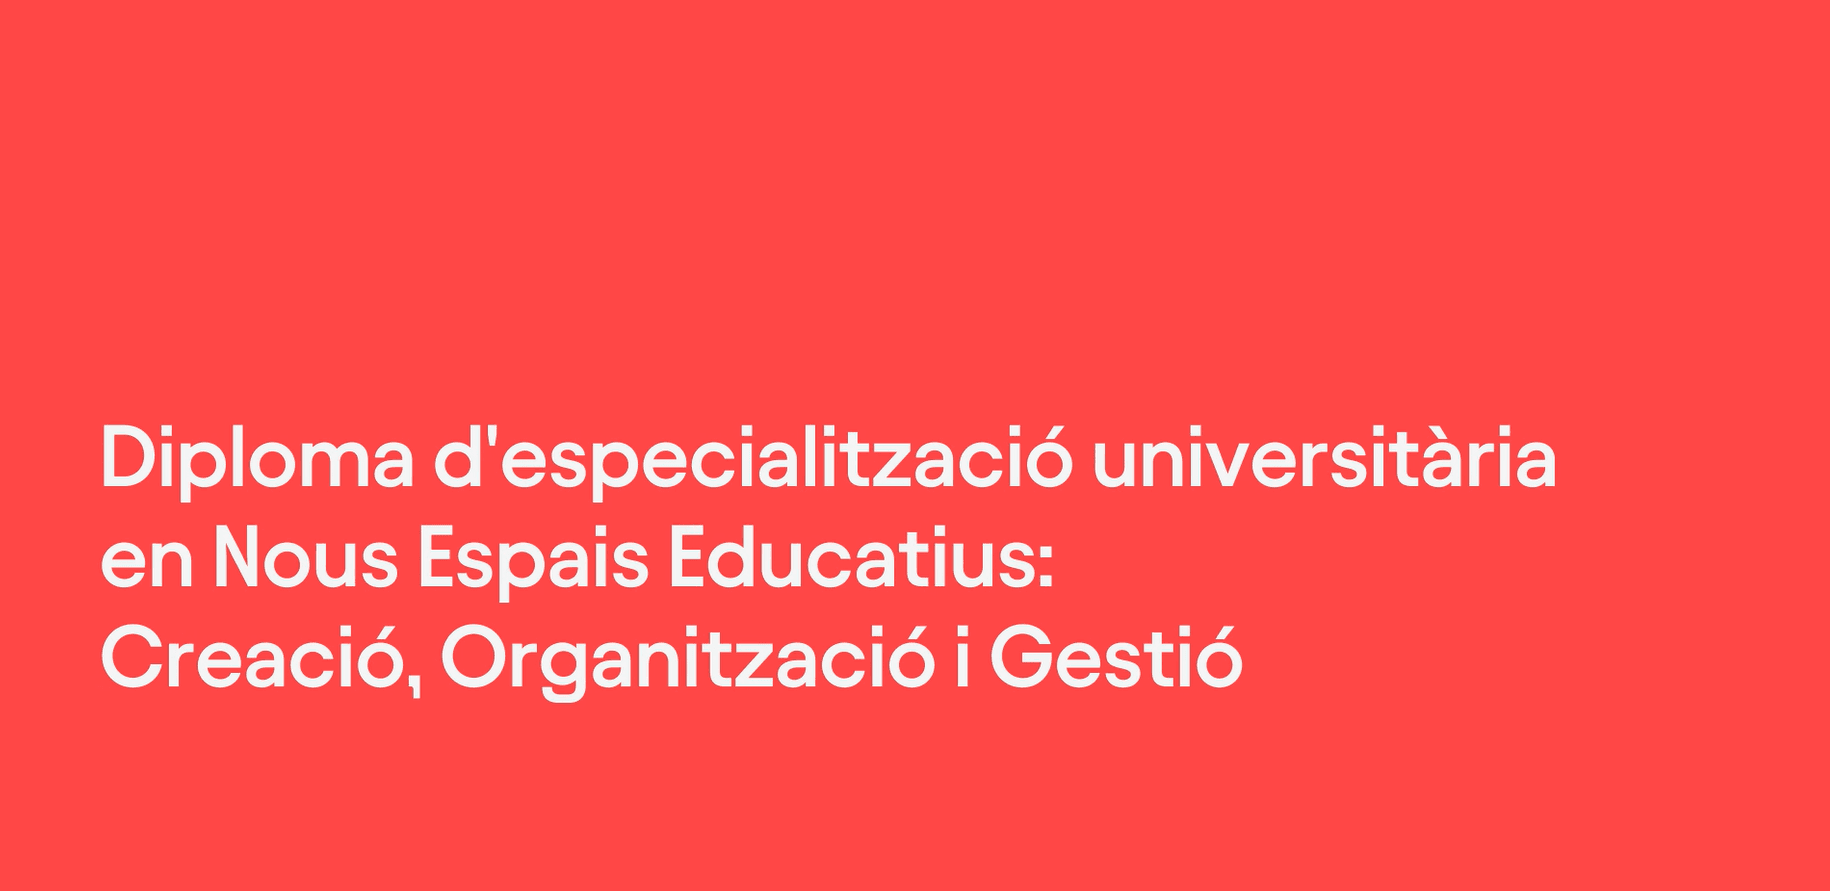 Diploma d'especialització universitària en Nous Espais Educatius: Creació, Organització i Gestió